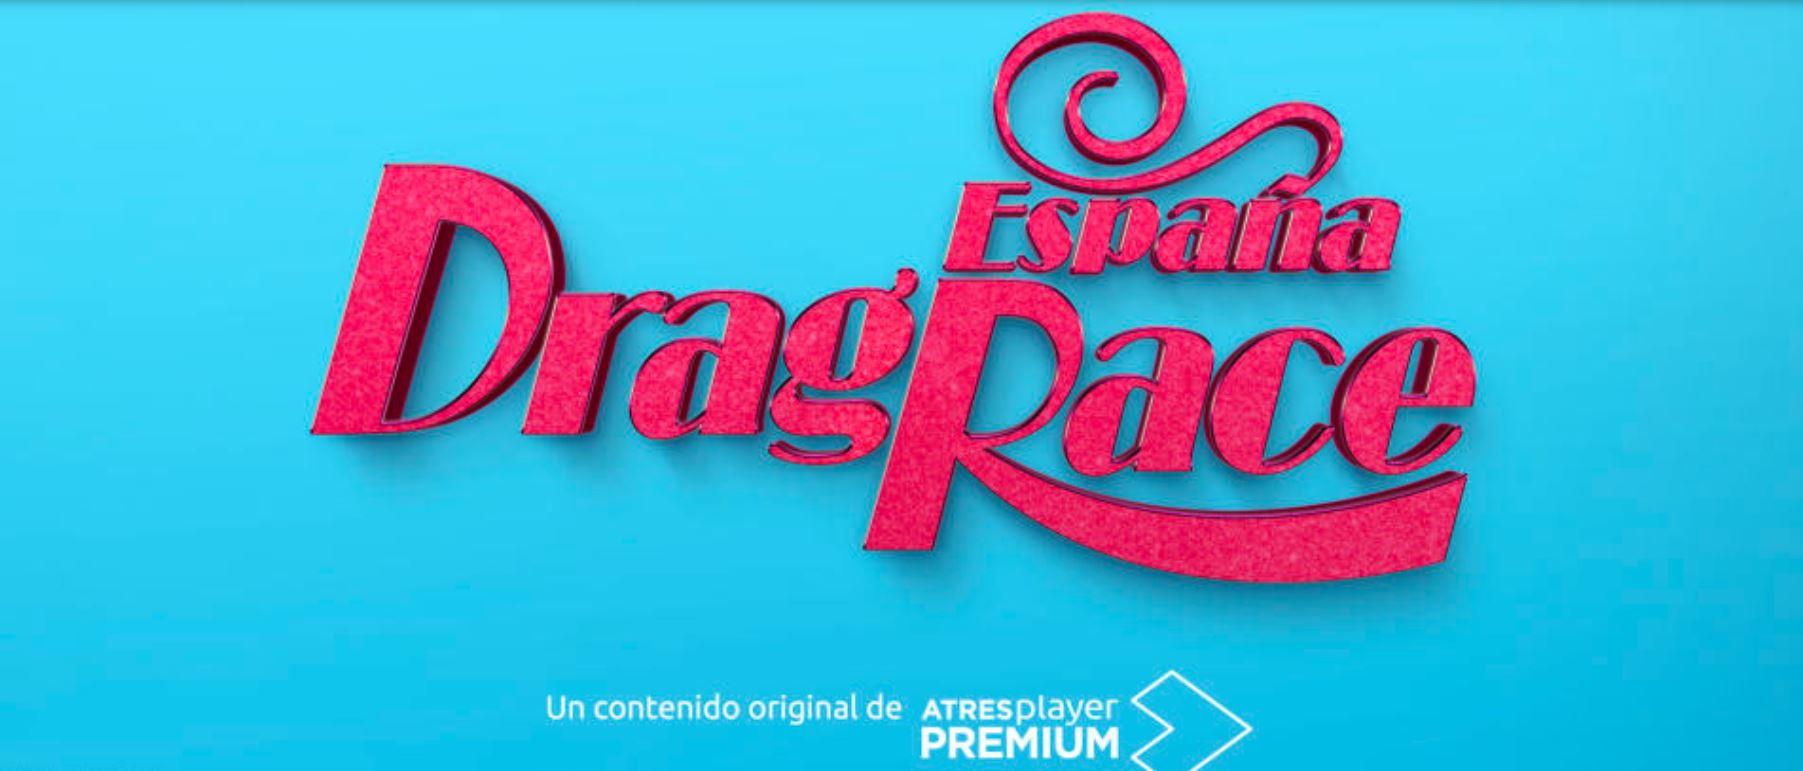 Cartel de 'España Drag Race'. Atresmedia